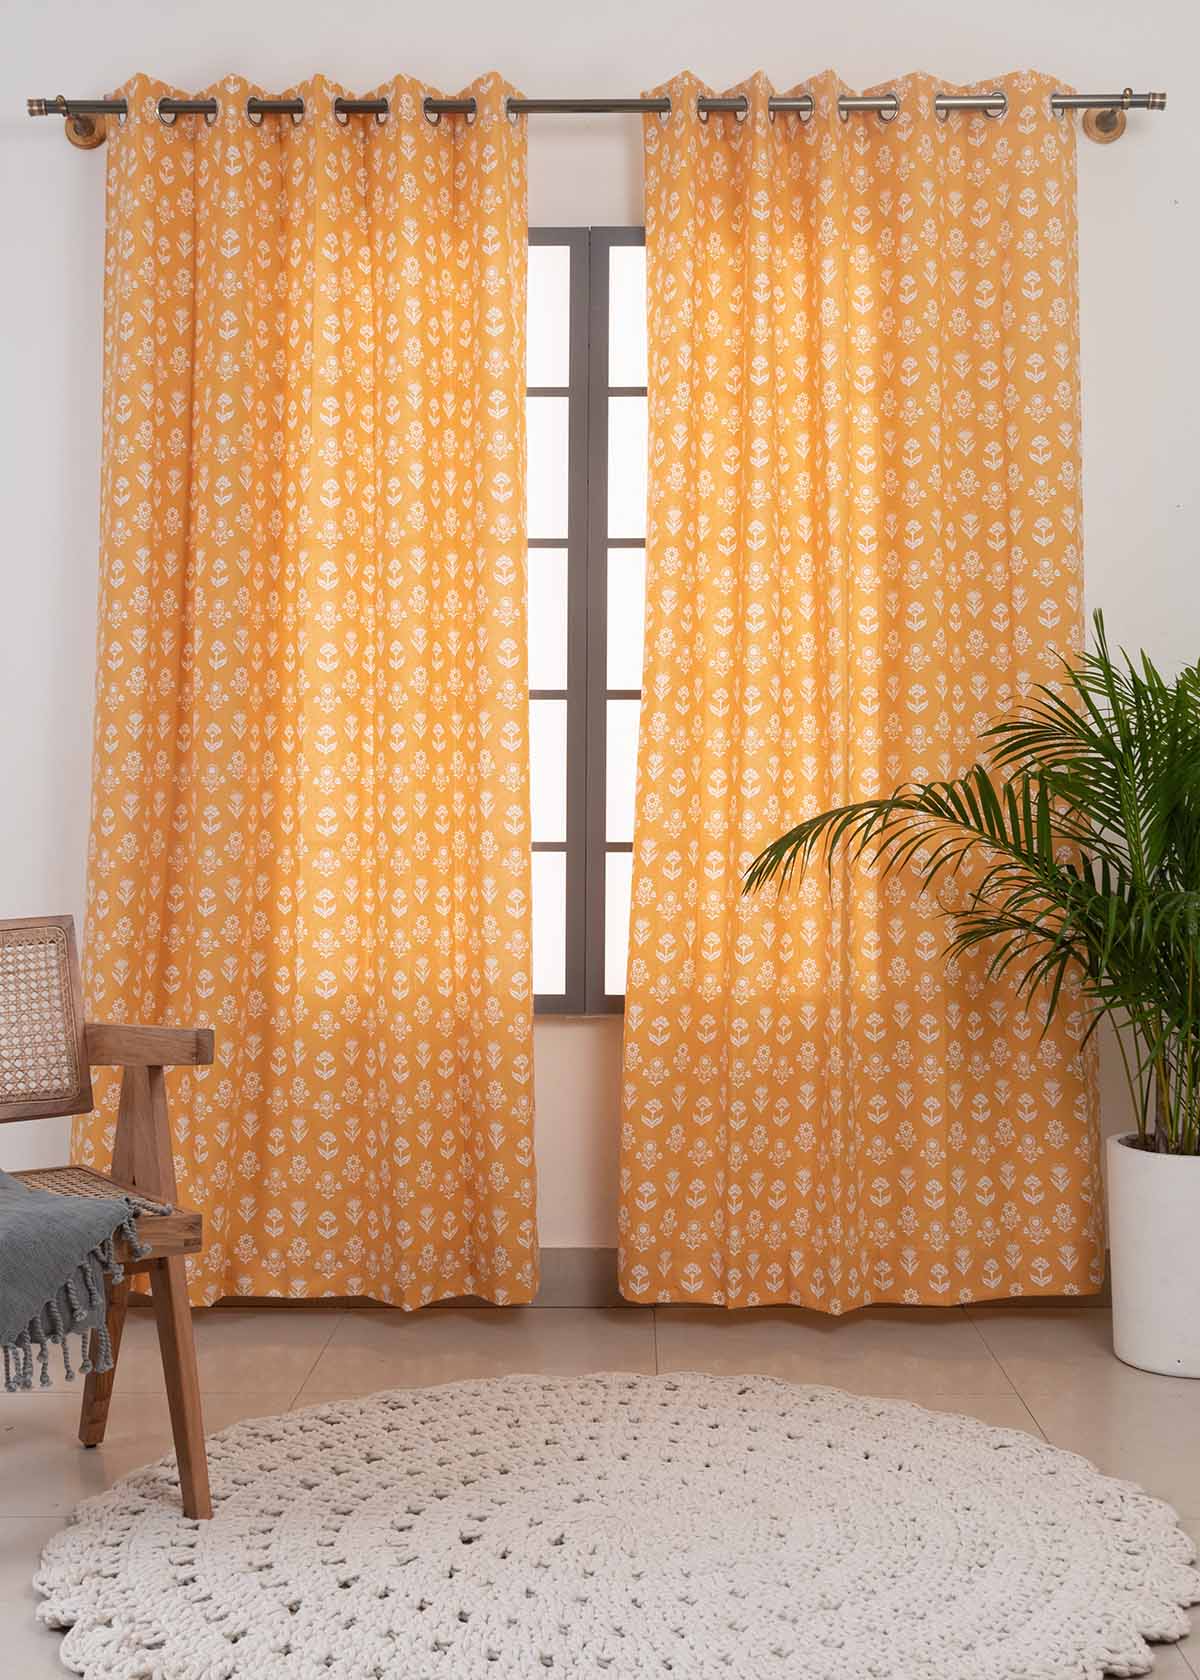 Dahlia 100% Customizable Cotton floral curtain for living room - Room darkening - Mustard - Mustard